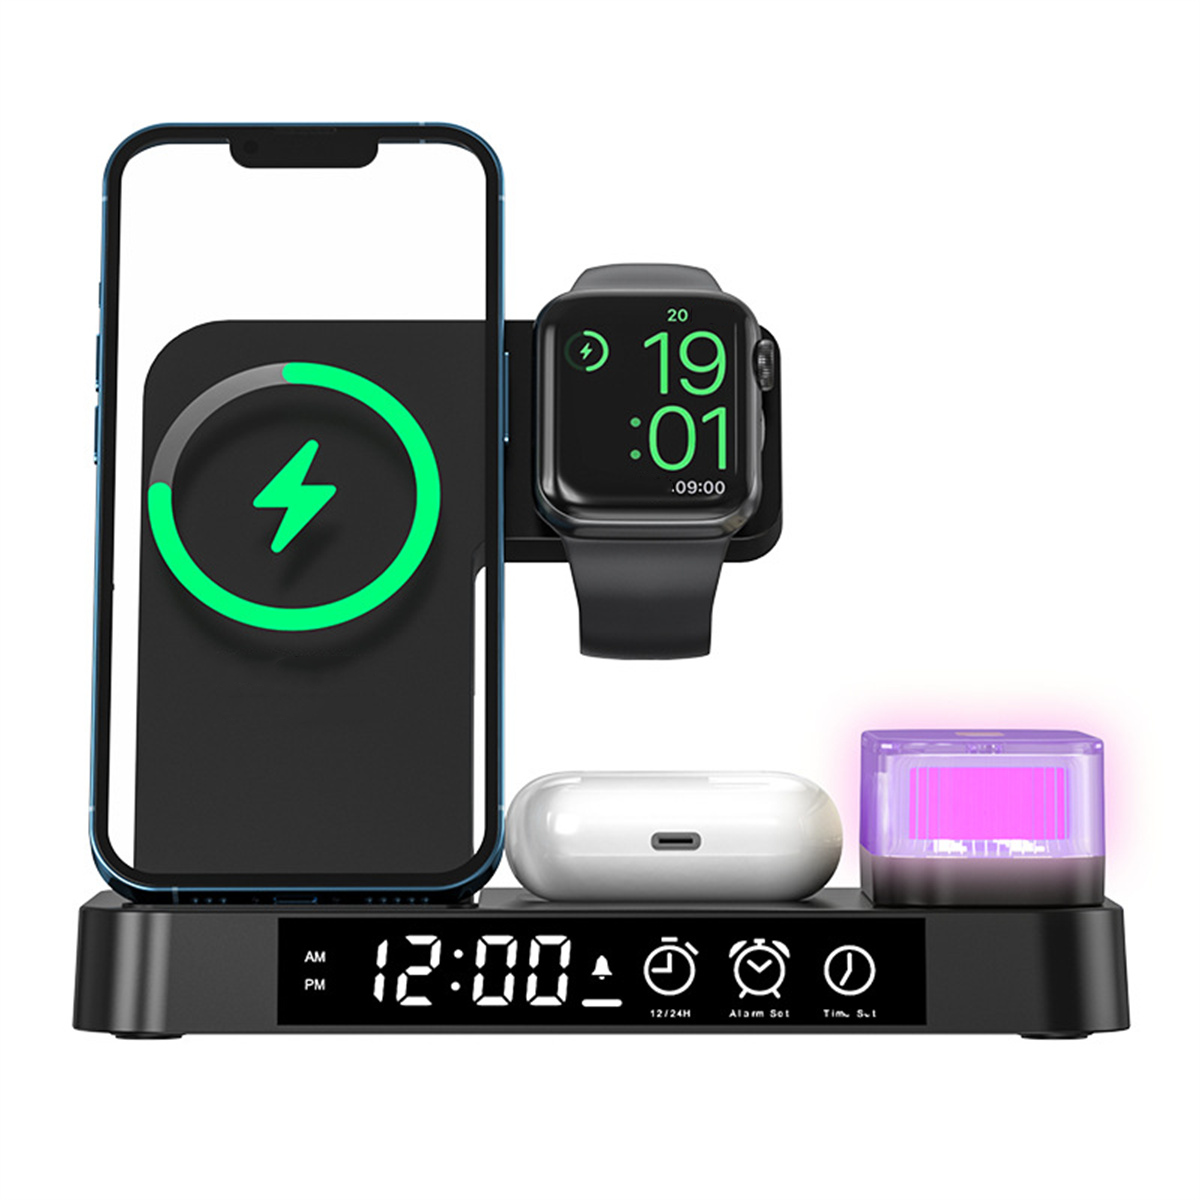 Uhranzeige, kabelloses iPhone, Alarmeinstellung - 3-in-1-Ladegerät Faltbares Weiß RGB-Nachtlicht, Ladegerät ENBAOXIN